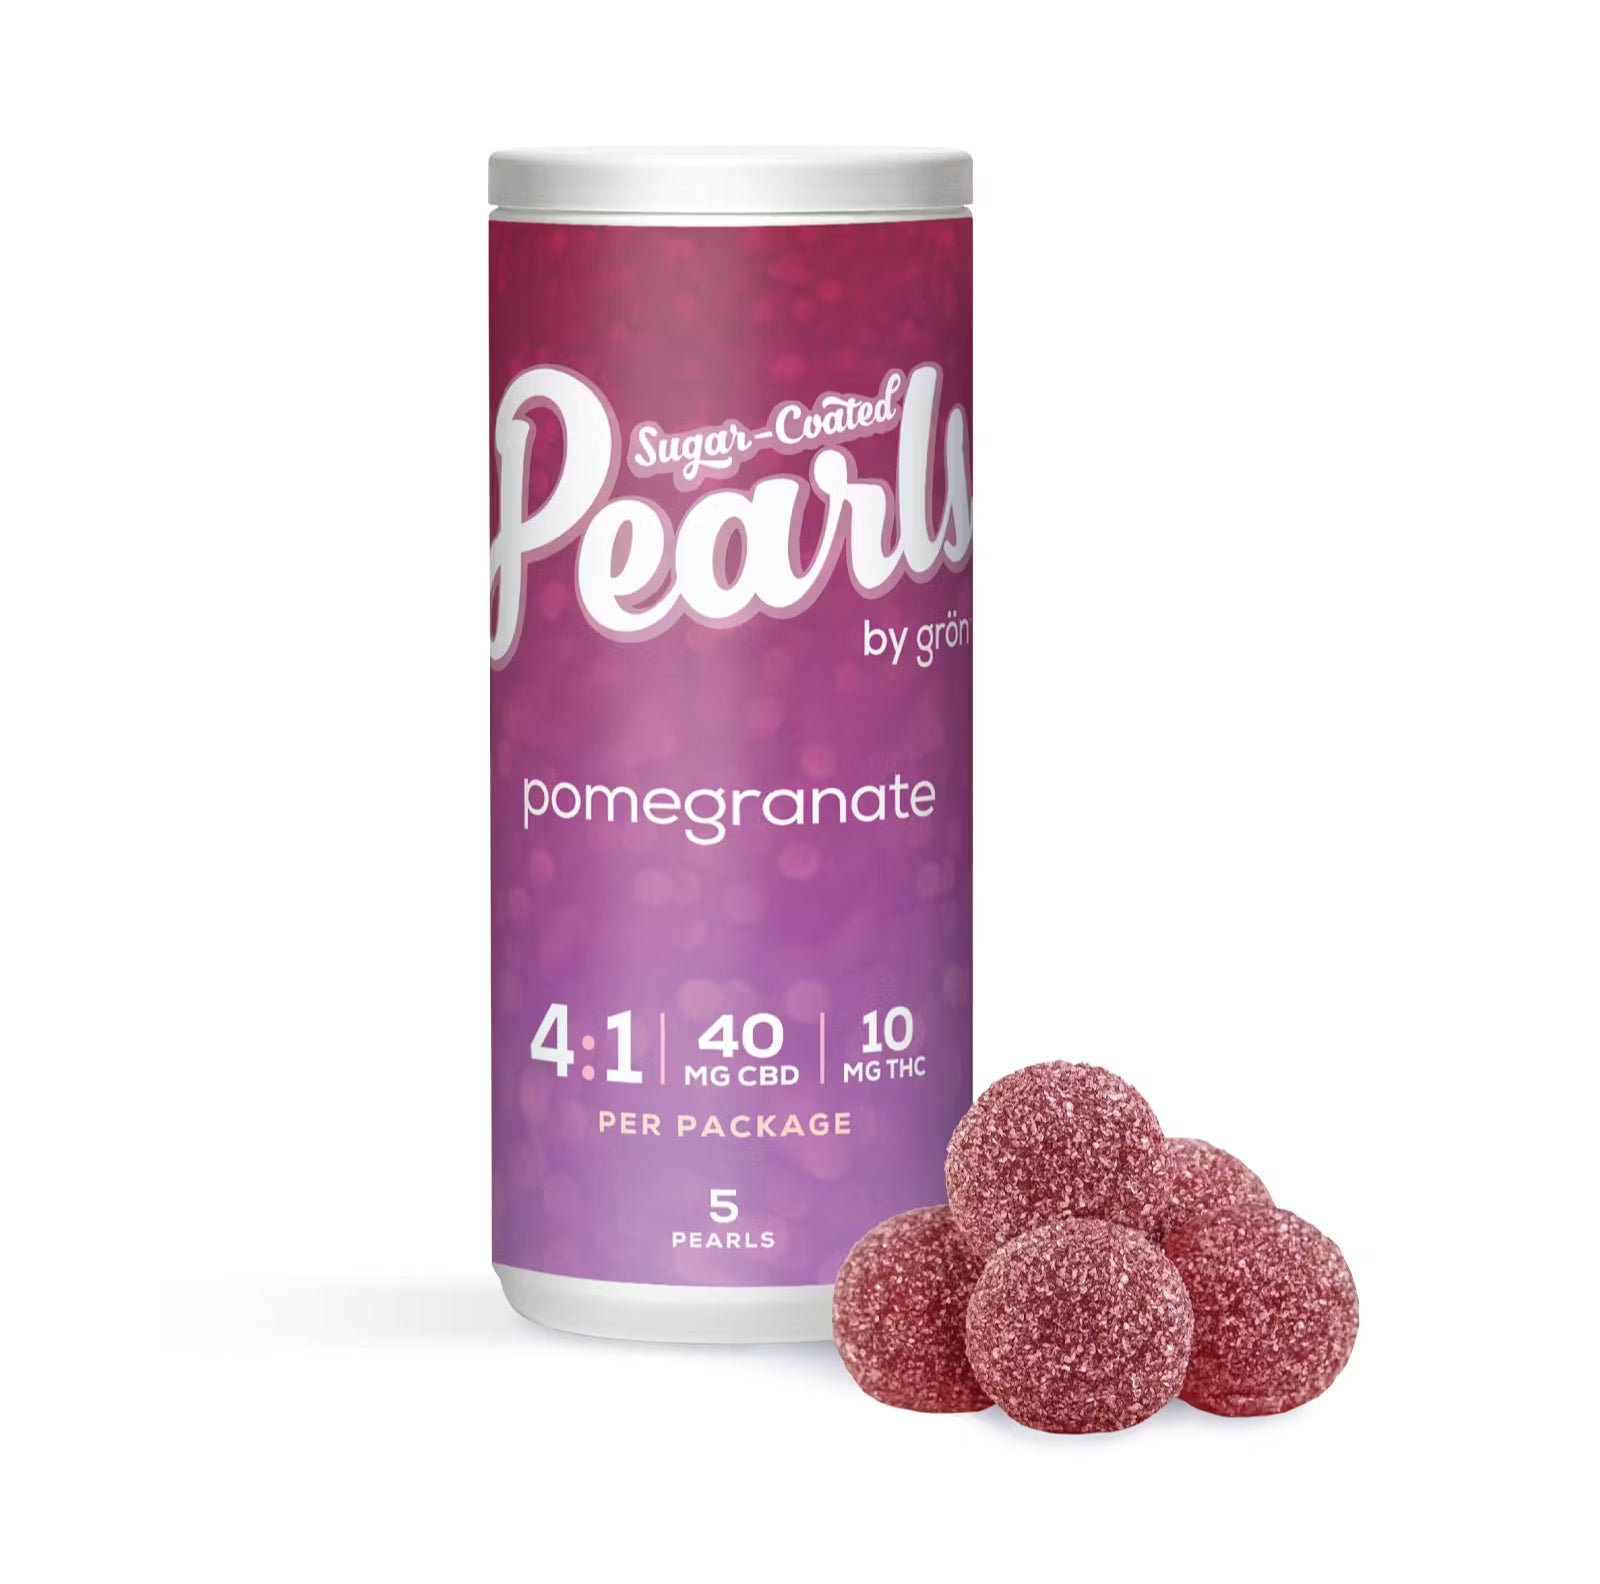 Pearls Pomegranate 4:1 CBD:THC - 5 X 3.5g